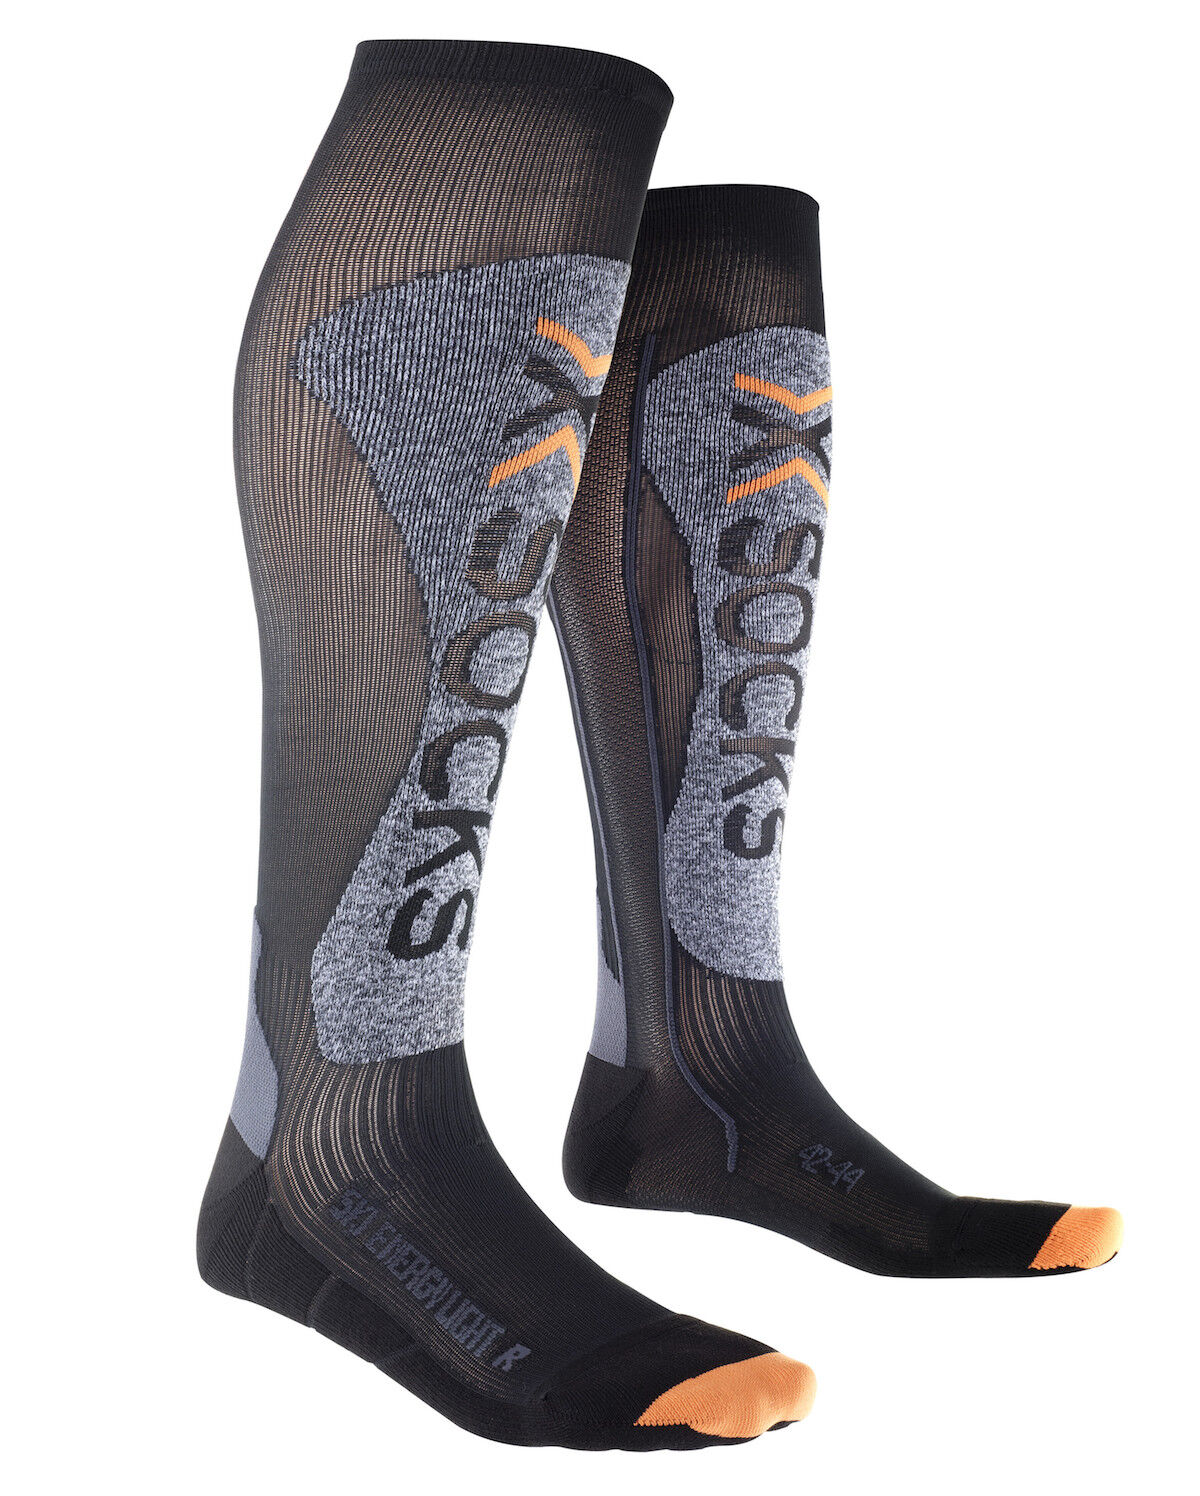 X-Socks Ski Energizer Light - Skisocken